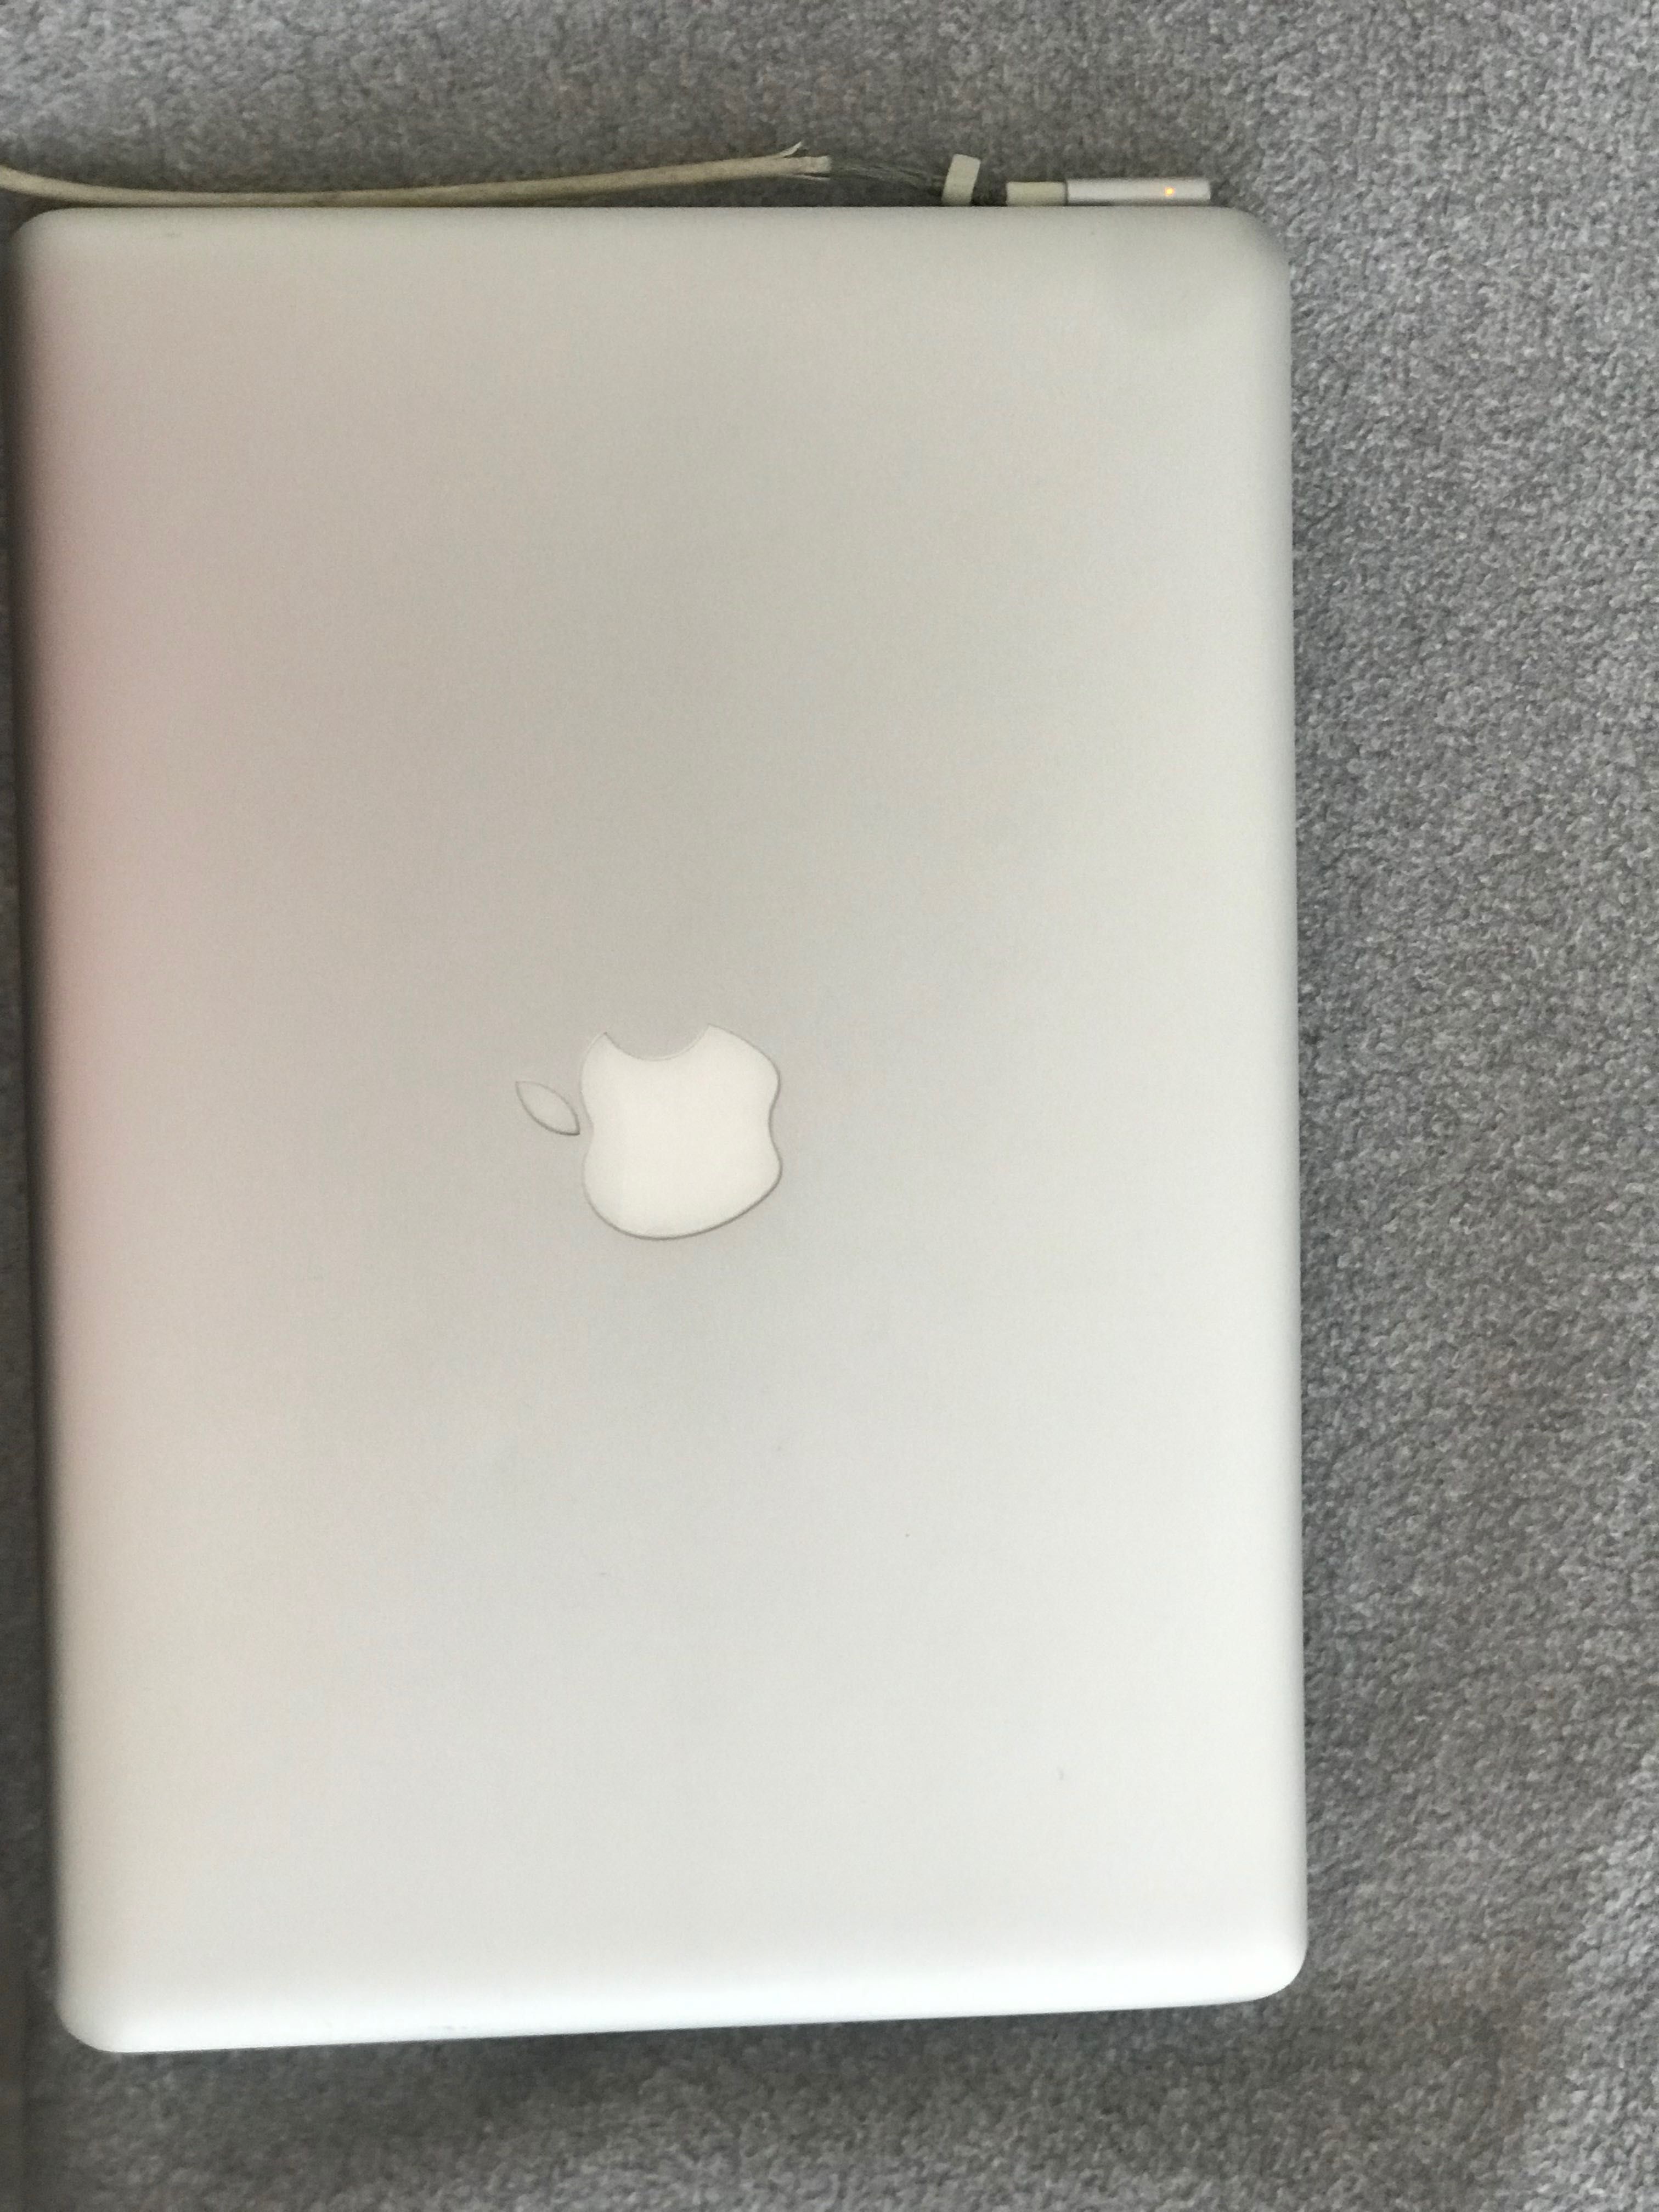 MacBook Pro (13 polegadas, meados de 2012) como novo!